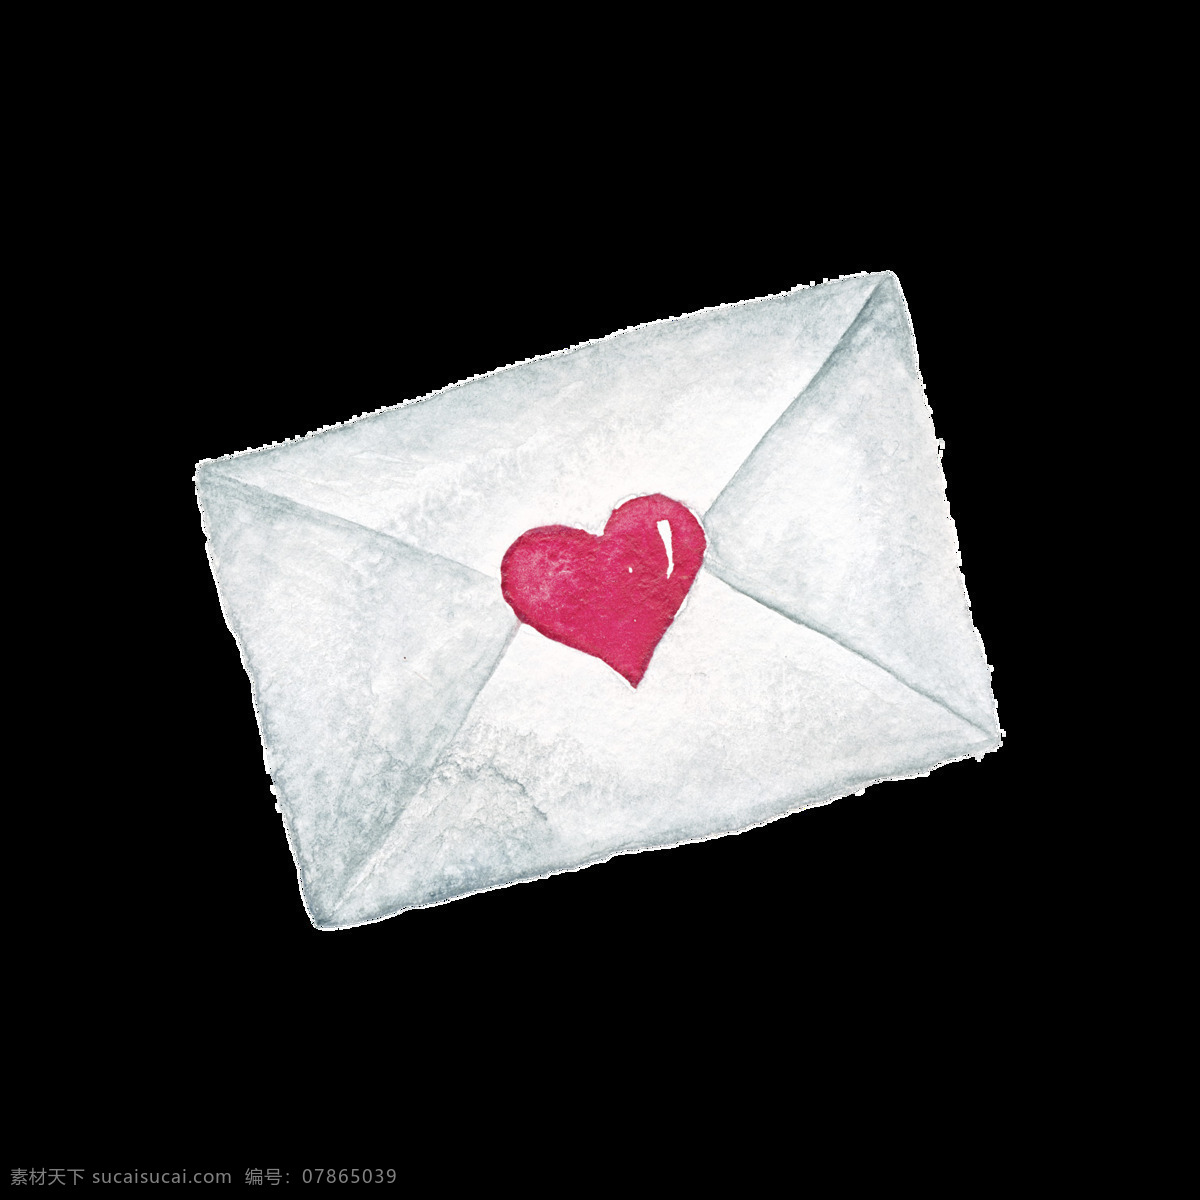 情人节 卡片 装饰 信封 爱心 红色 手绘 矢量素材 设计素材